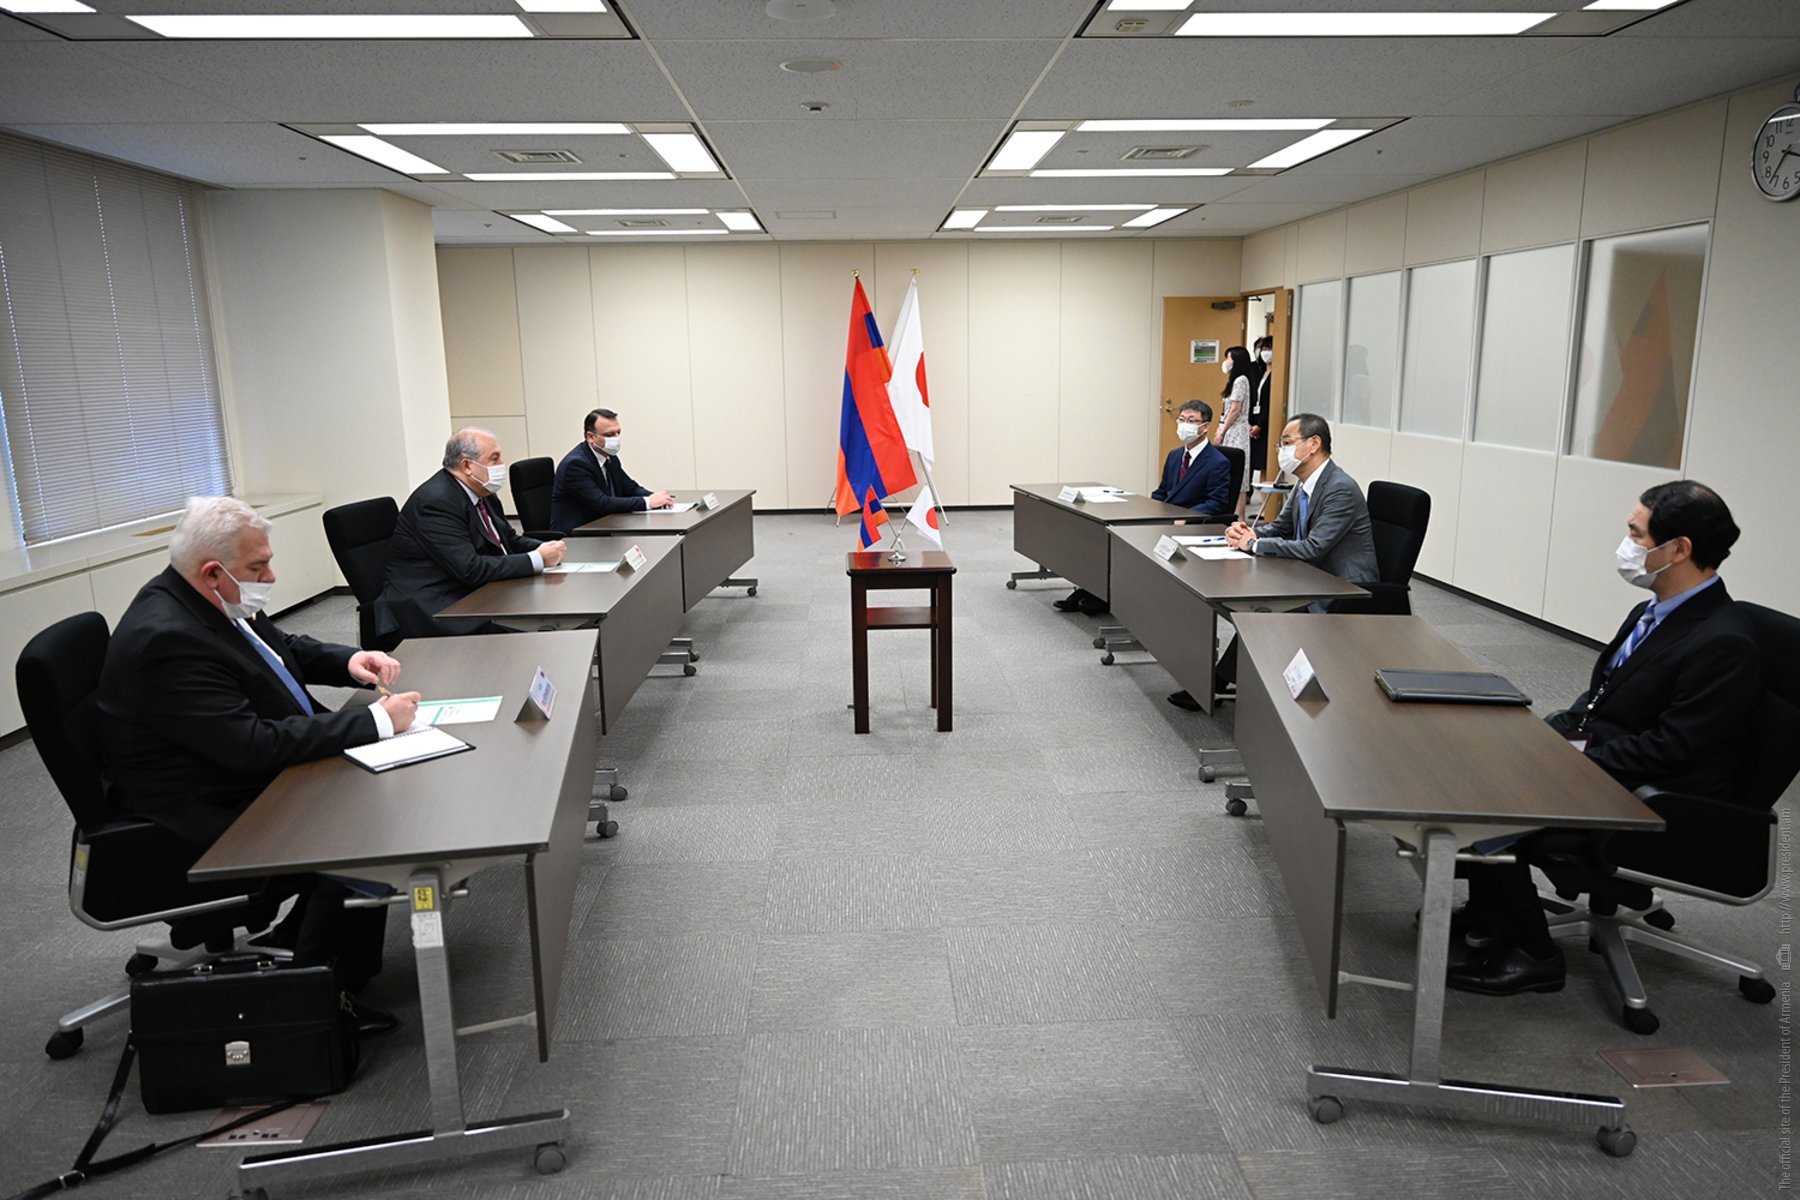 ՀՀ նախագահ Արմեն Սարգսյանն այցելել է Ճապոնիայի Միջուկային կարգավորման գործակալություն